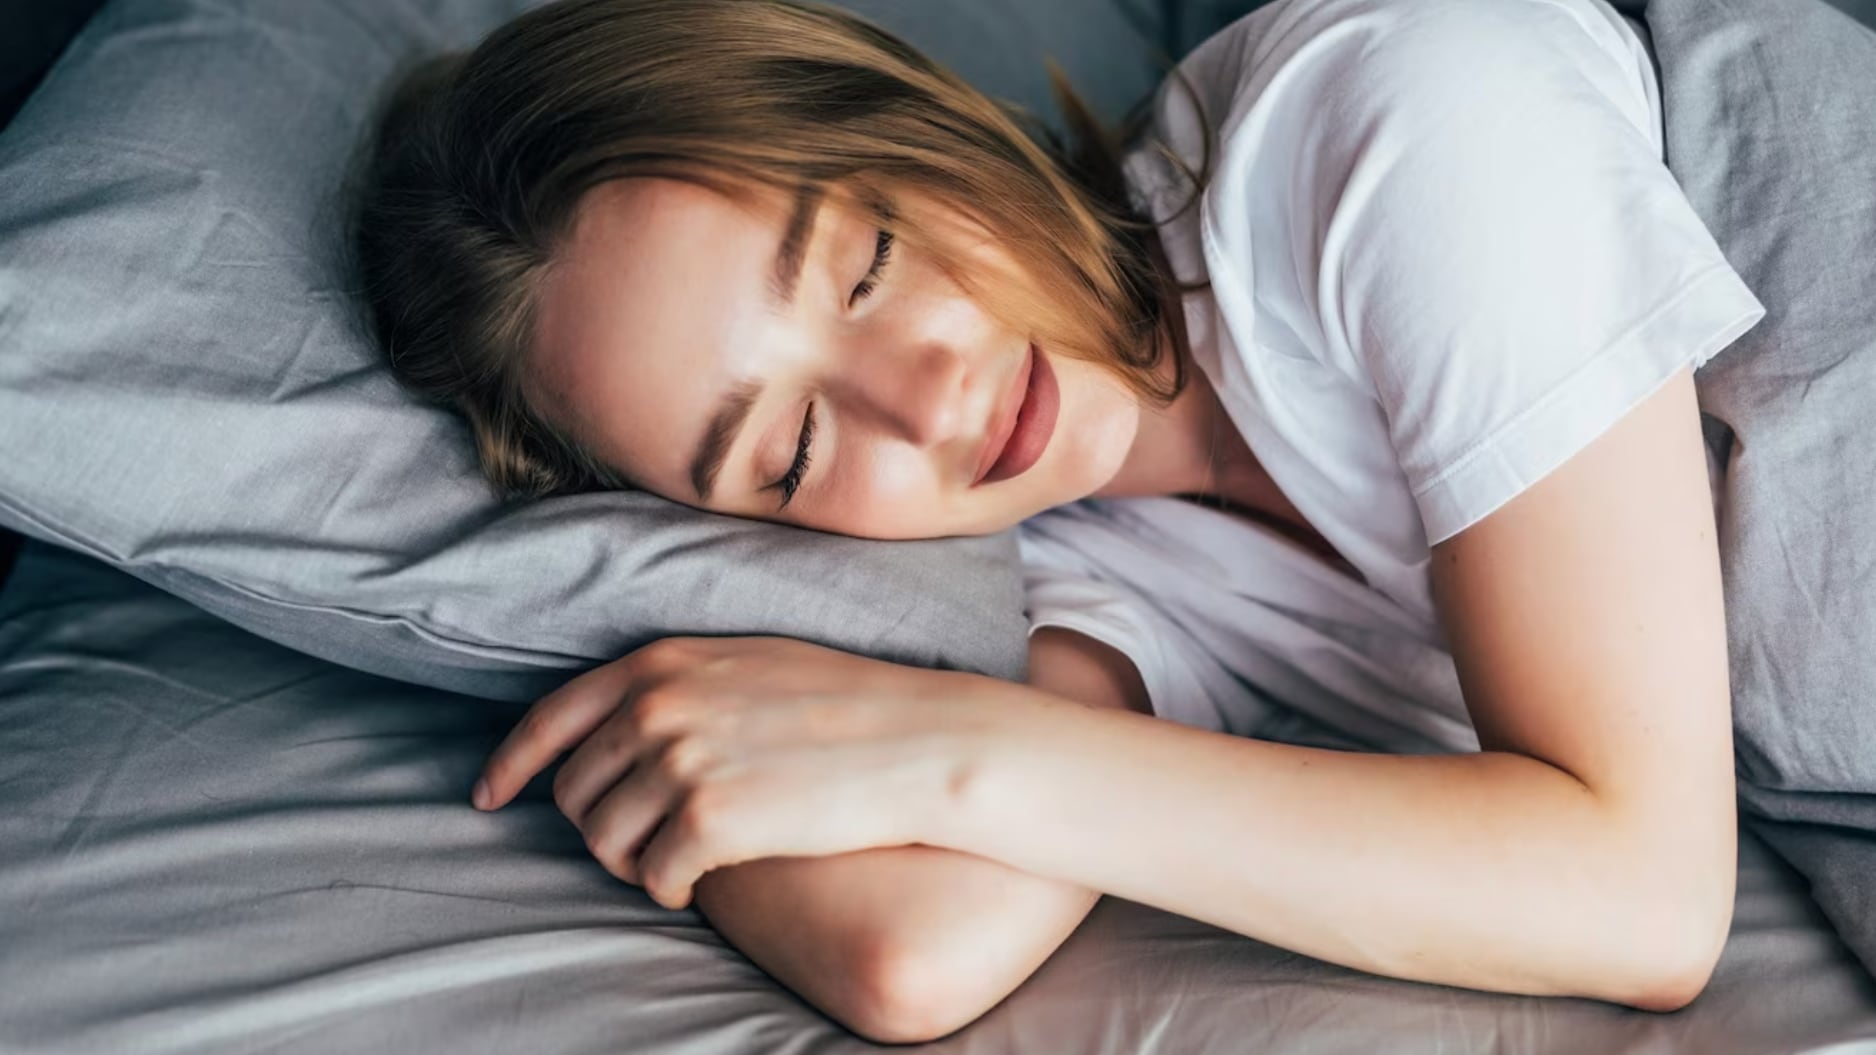 Dormir bien es indispensable para mantenernos funcionales